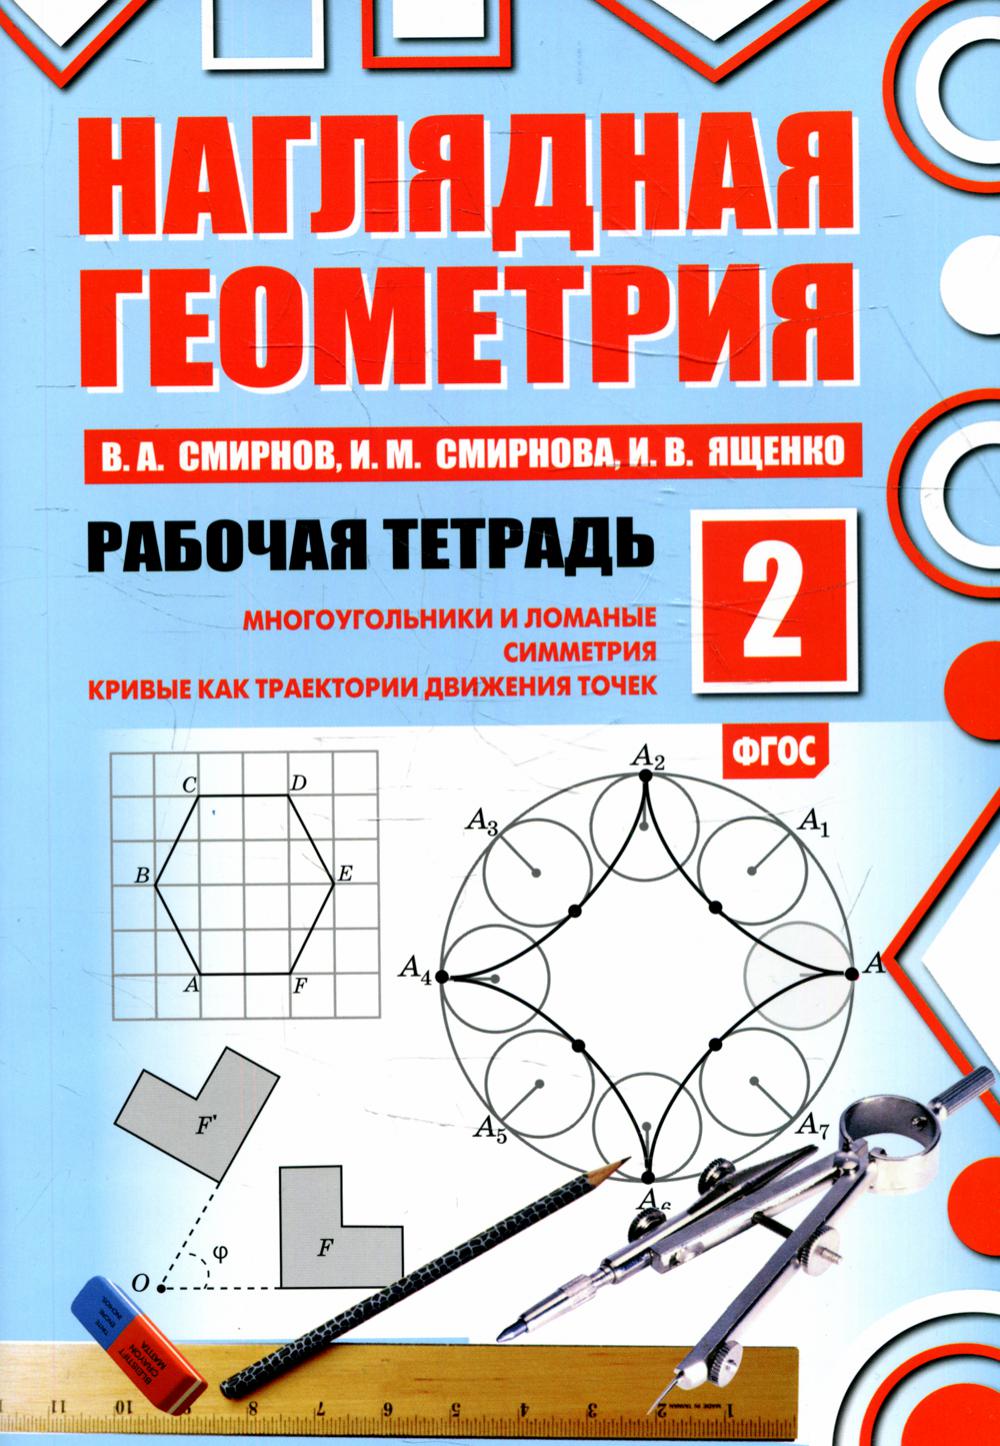 Наглядная геометрия. Рабочая тетрадь № 2. 5-е изд., стер